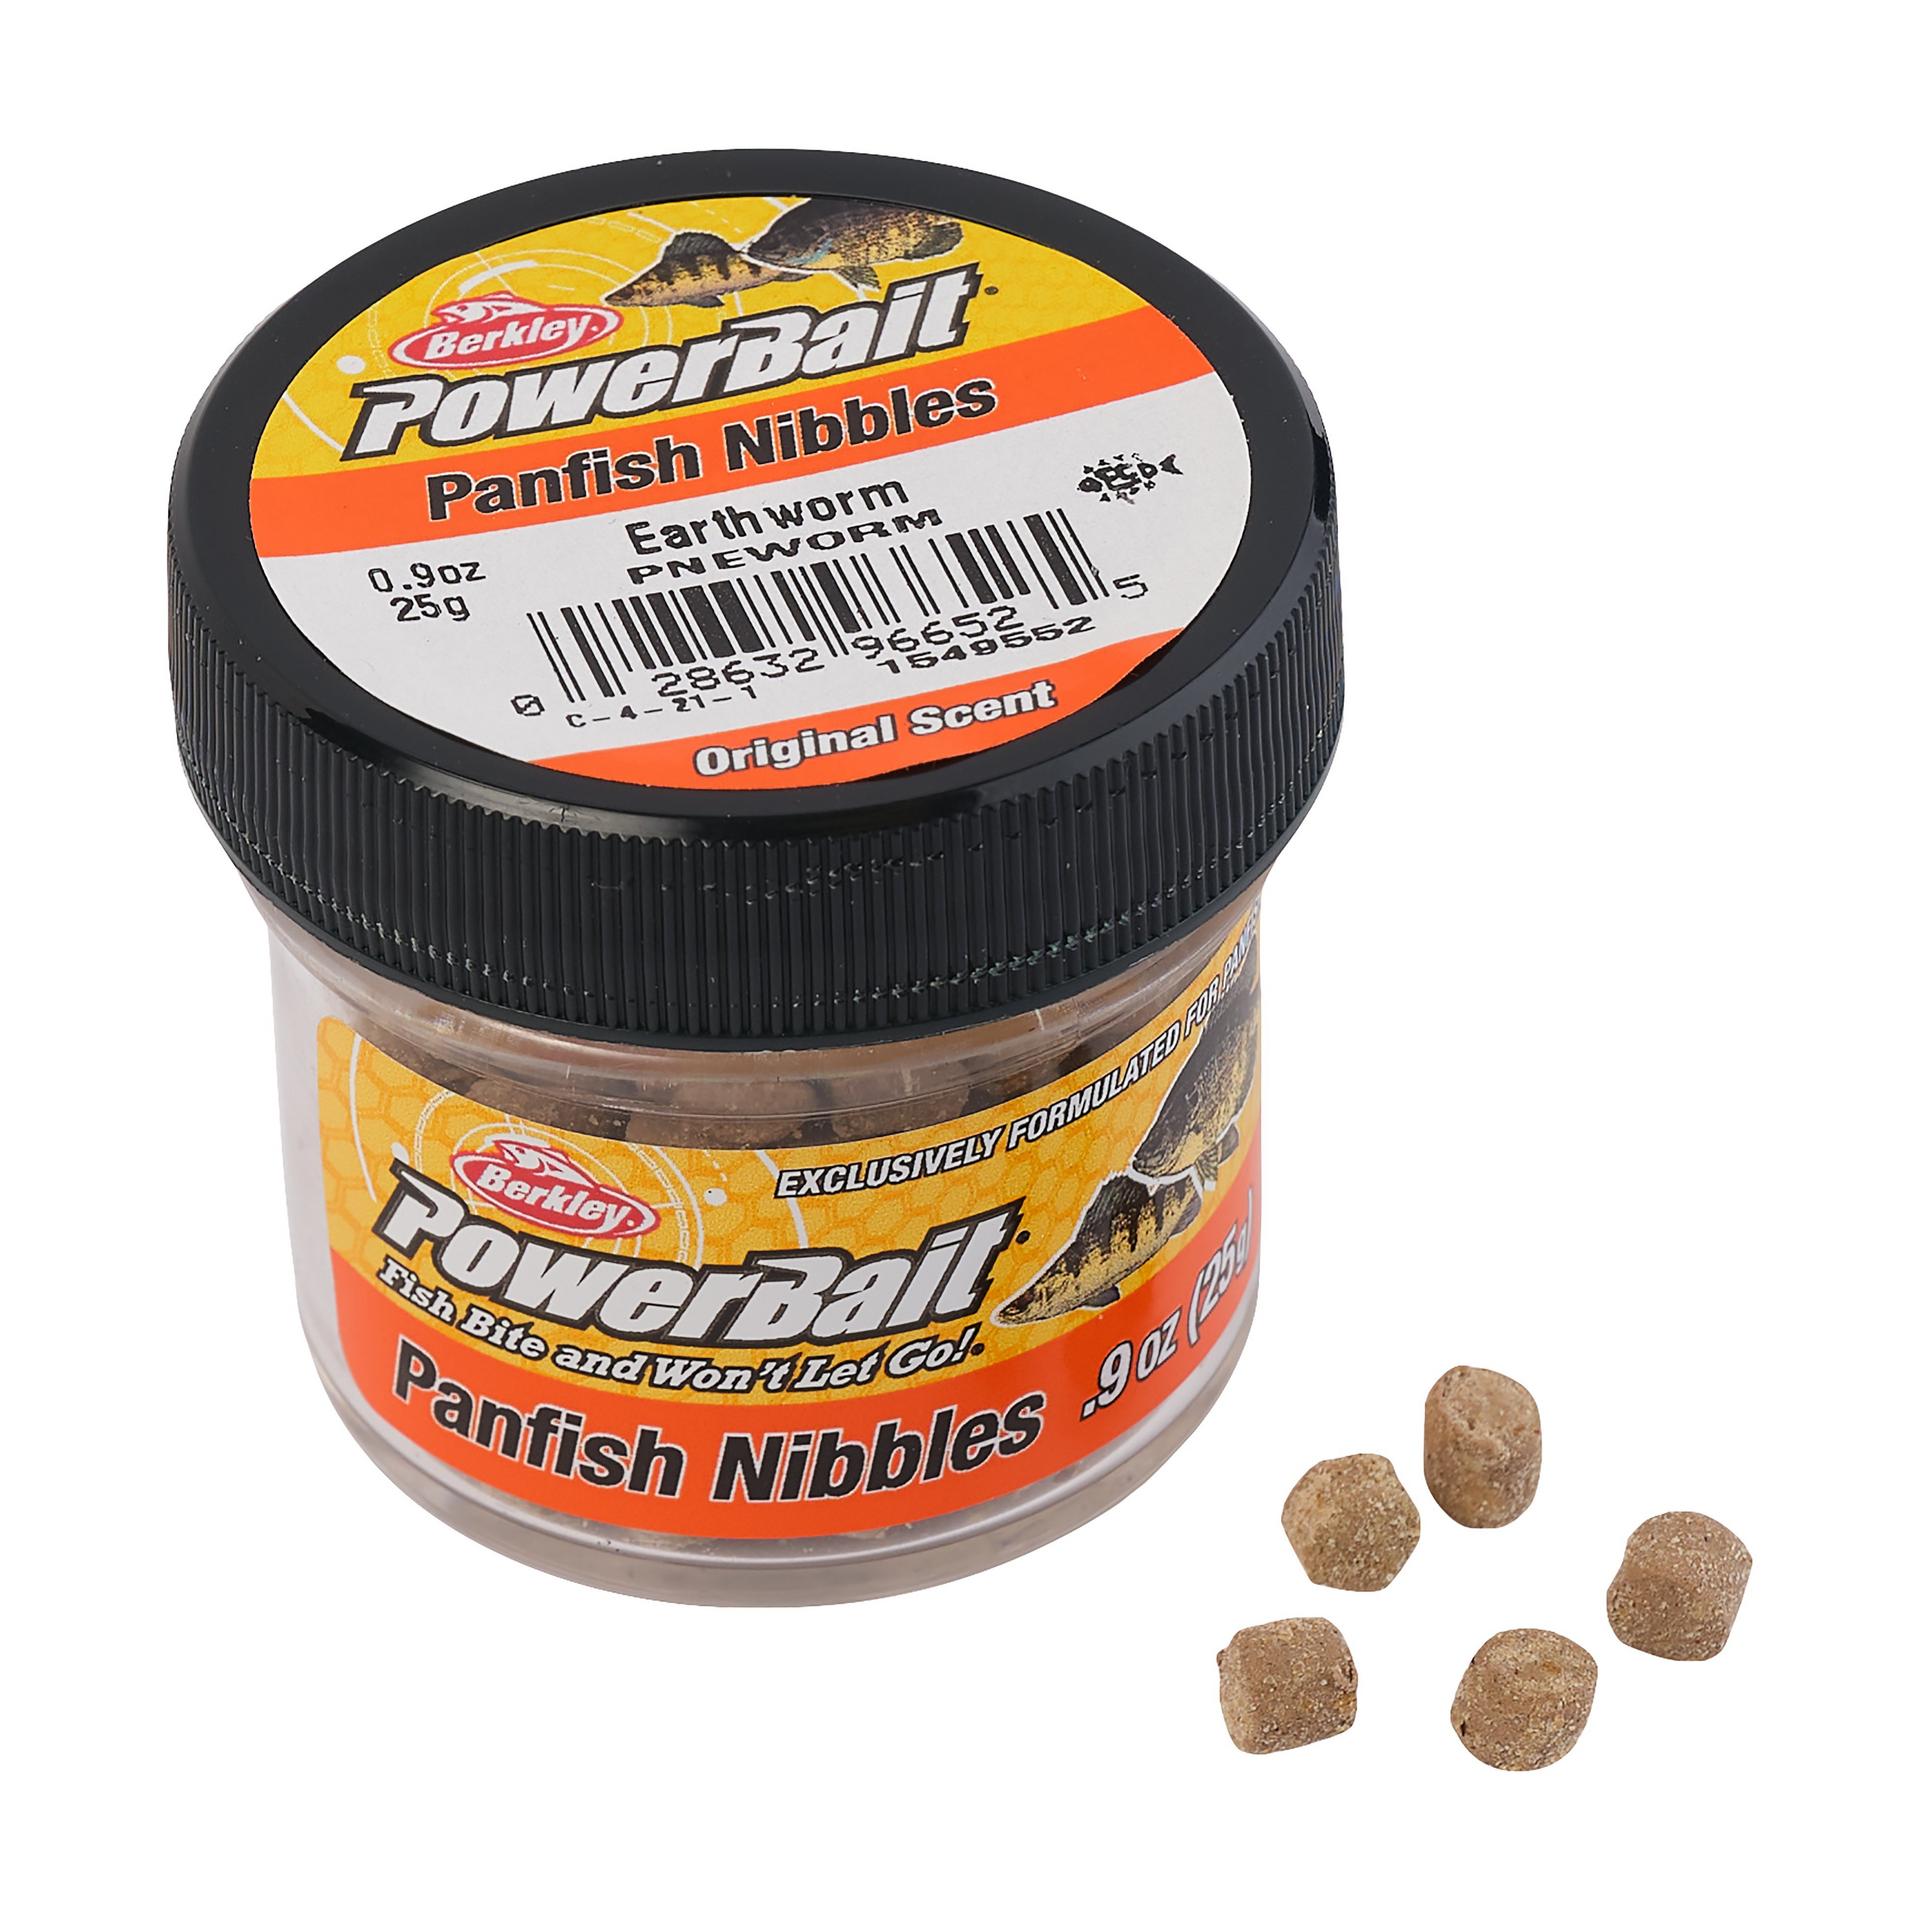 PowerBait® Panfish Nibbles